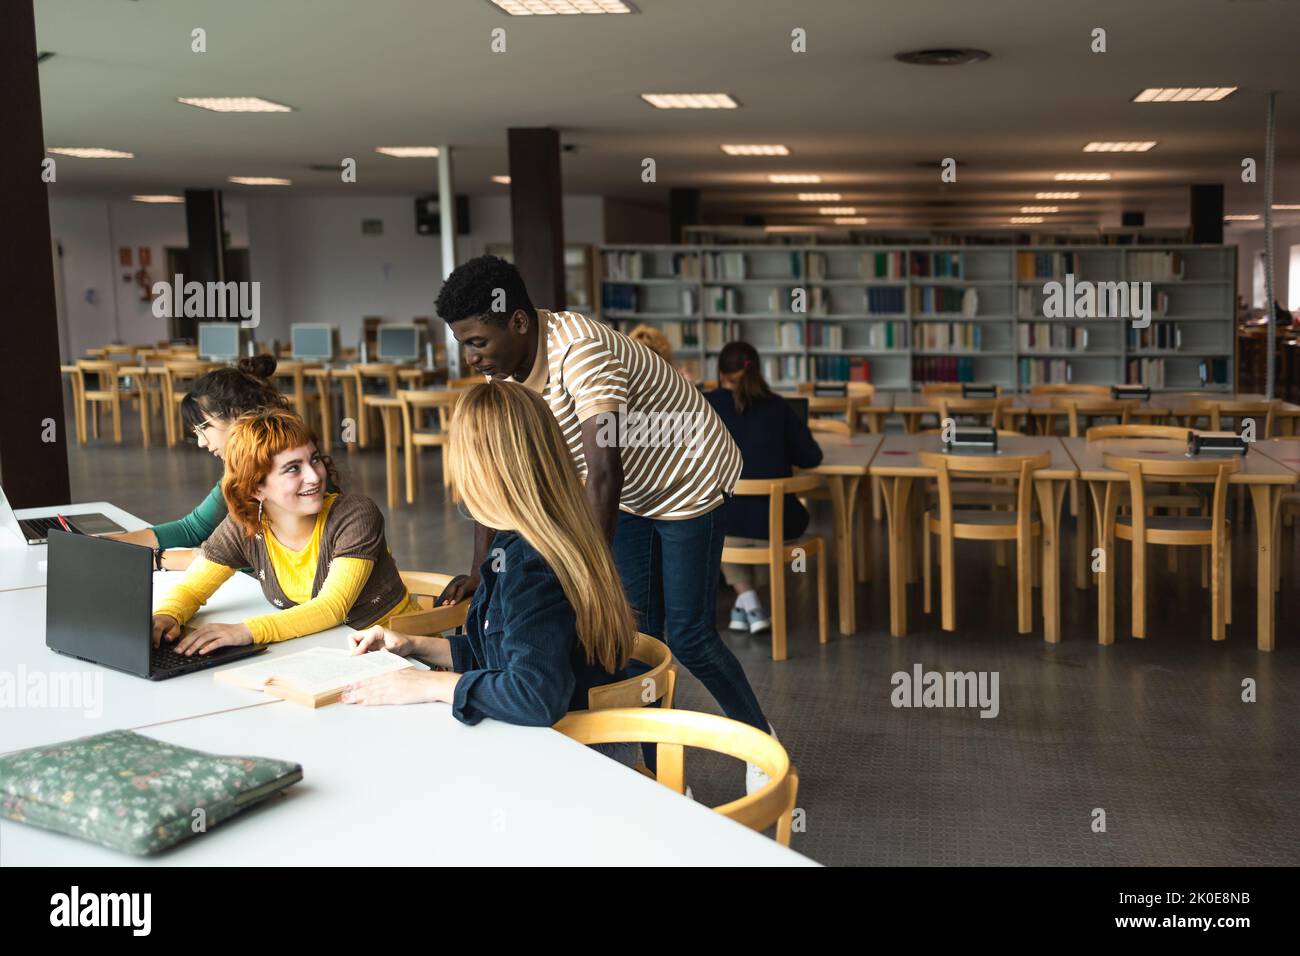 Junge, vielfältige Menschen studieren in der Bibliothek - Schulbildungskonzept Stockfoto